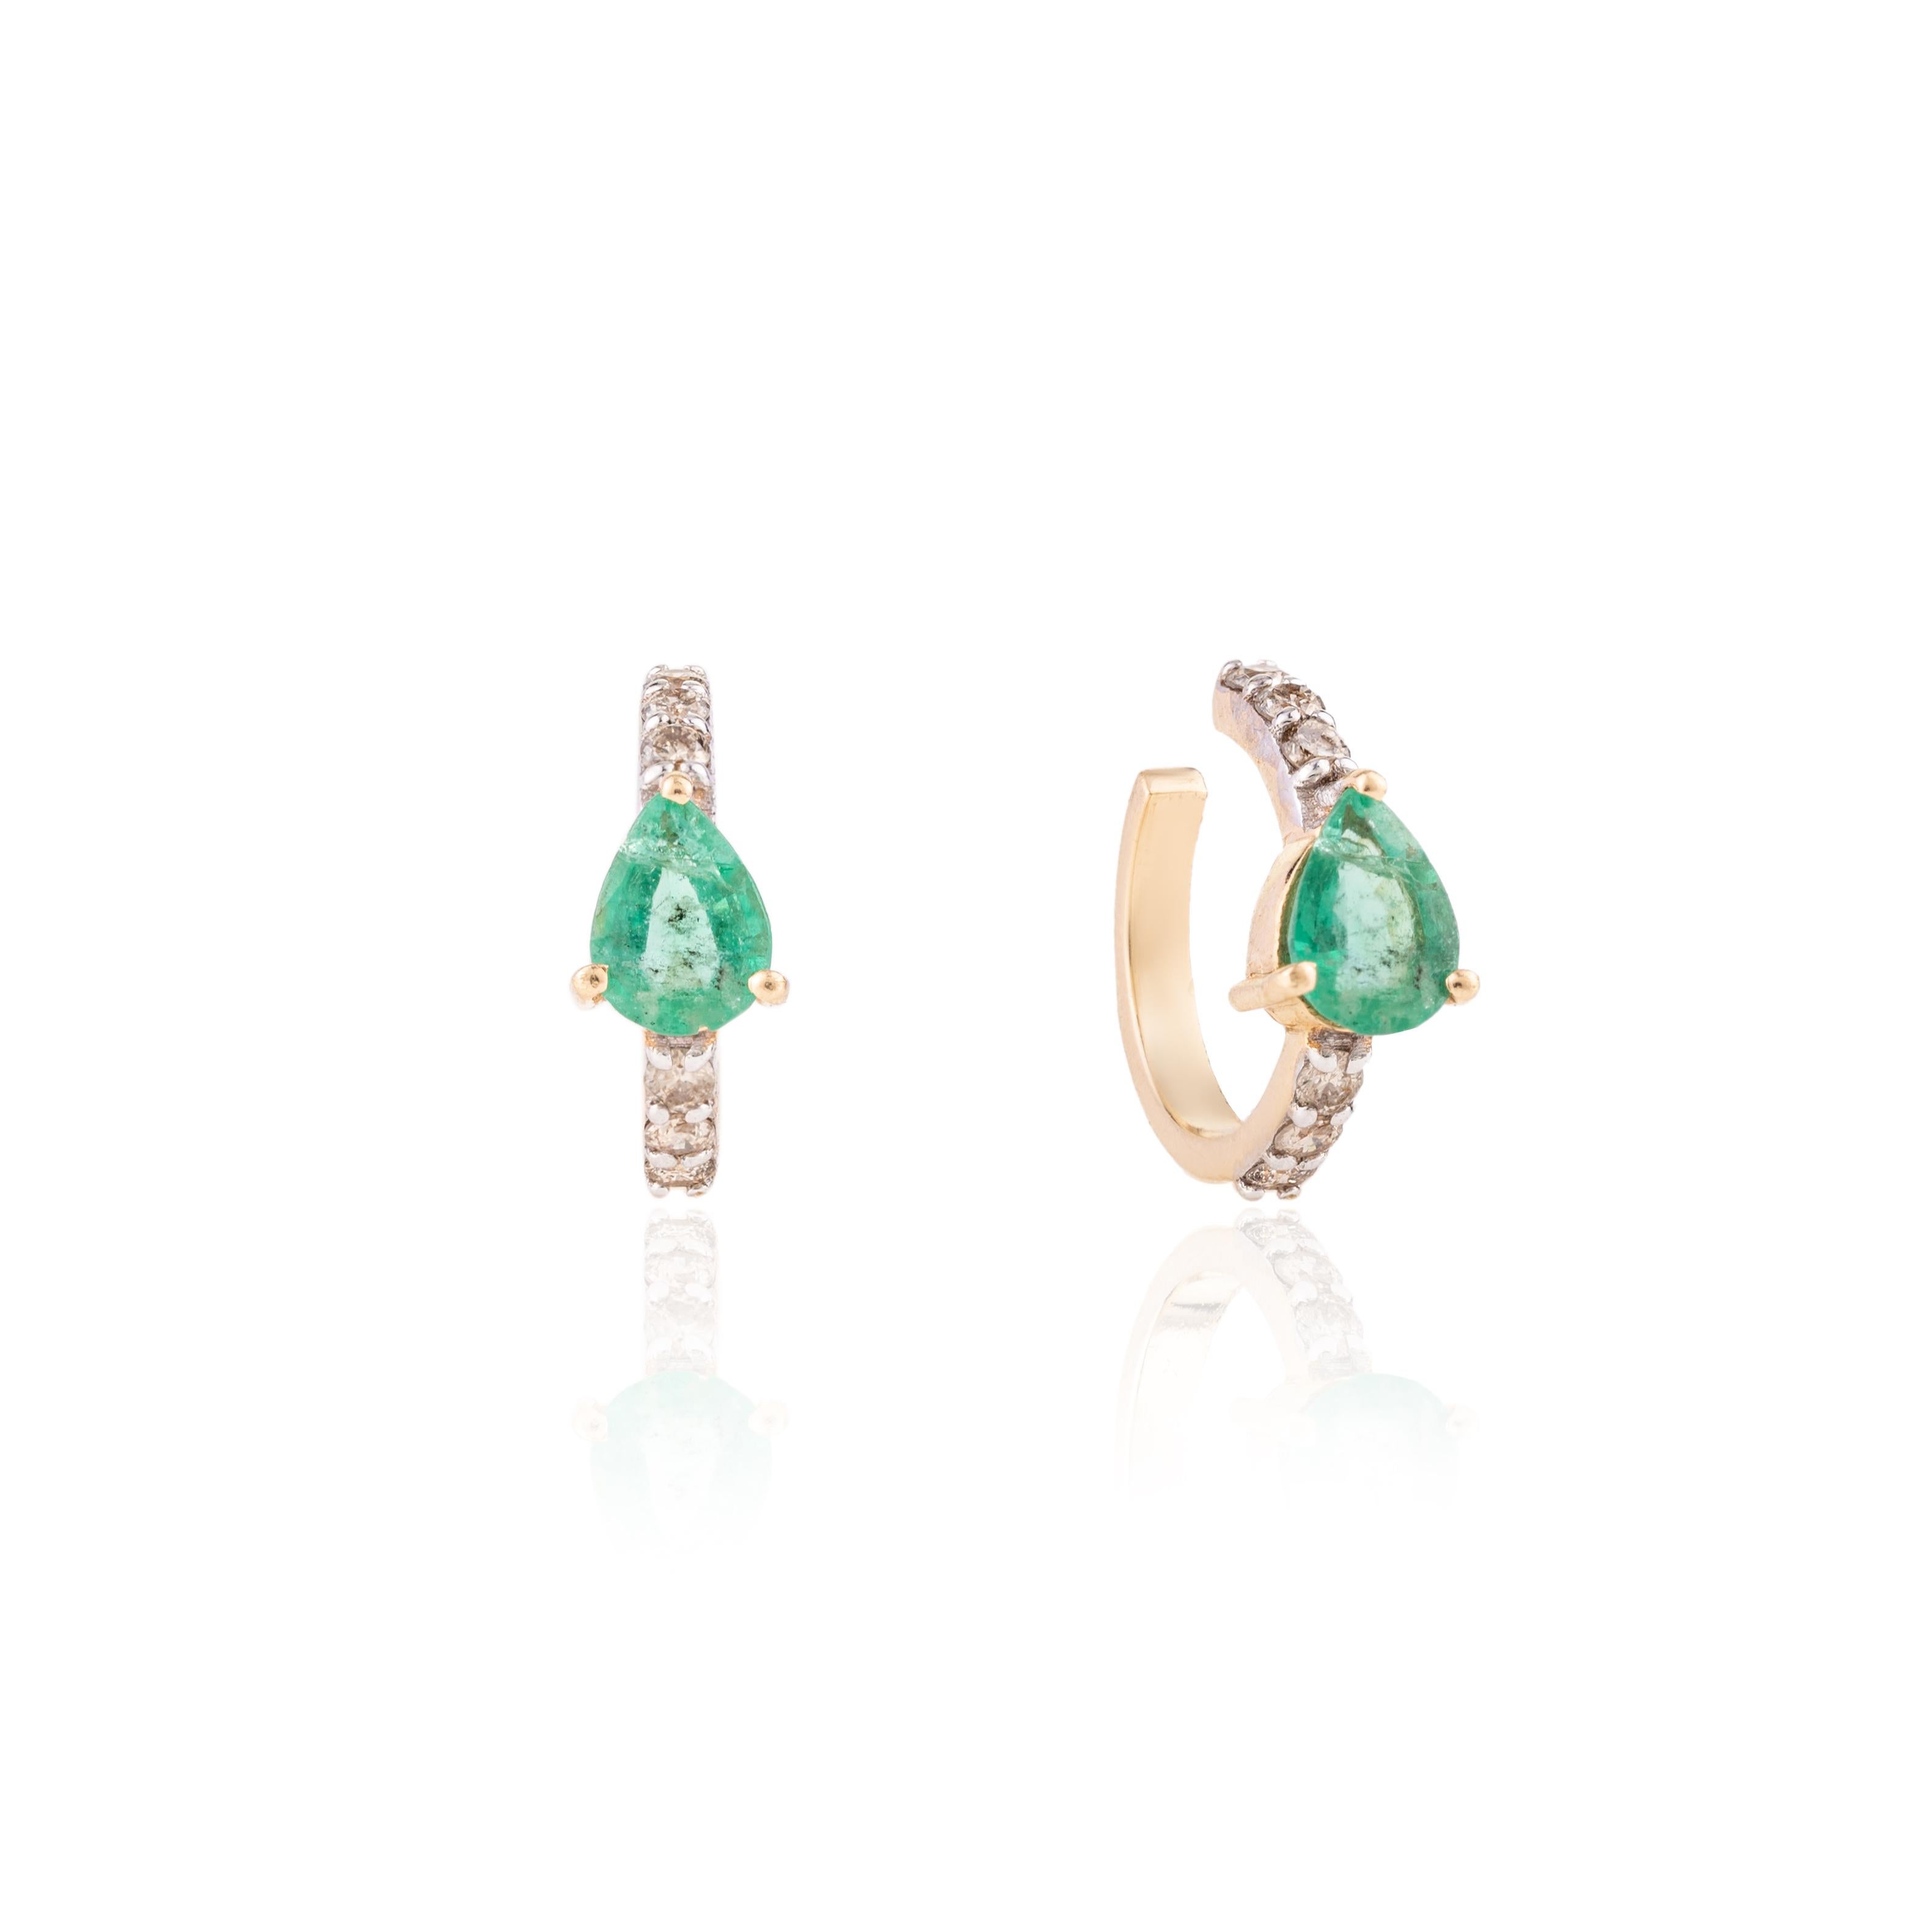 Zierliche Smaragd-Diamant-Helix-Manschettenohrringe aus 18 Karat Gold, um Ihren Look zu unterstreichen. Sie brauchen Helix-Ohrringe, um mit Ihrem Look ein Statement zu setzen. Diese Ohrringe mit einem Smaragd im Birnenschliff und Diamanten sorgen